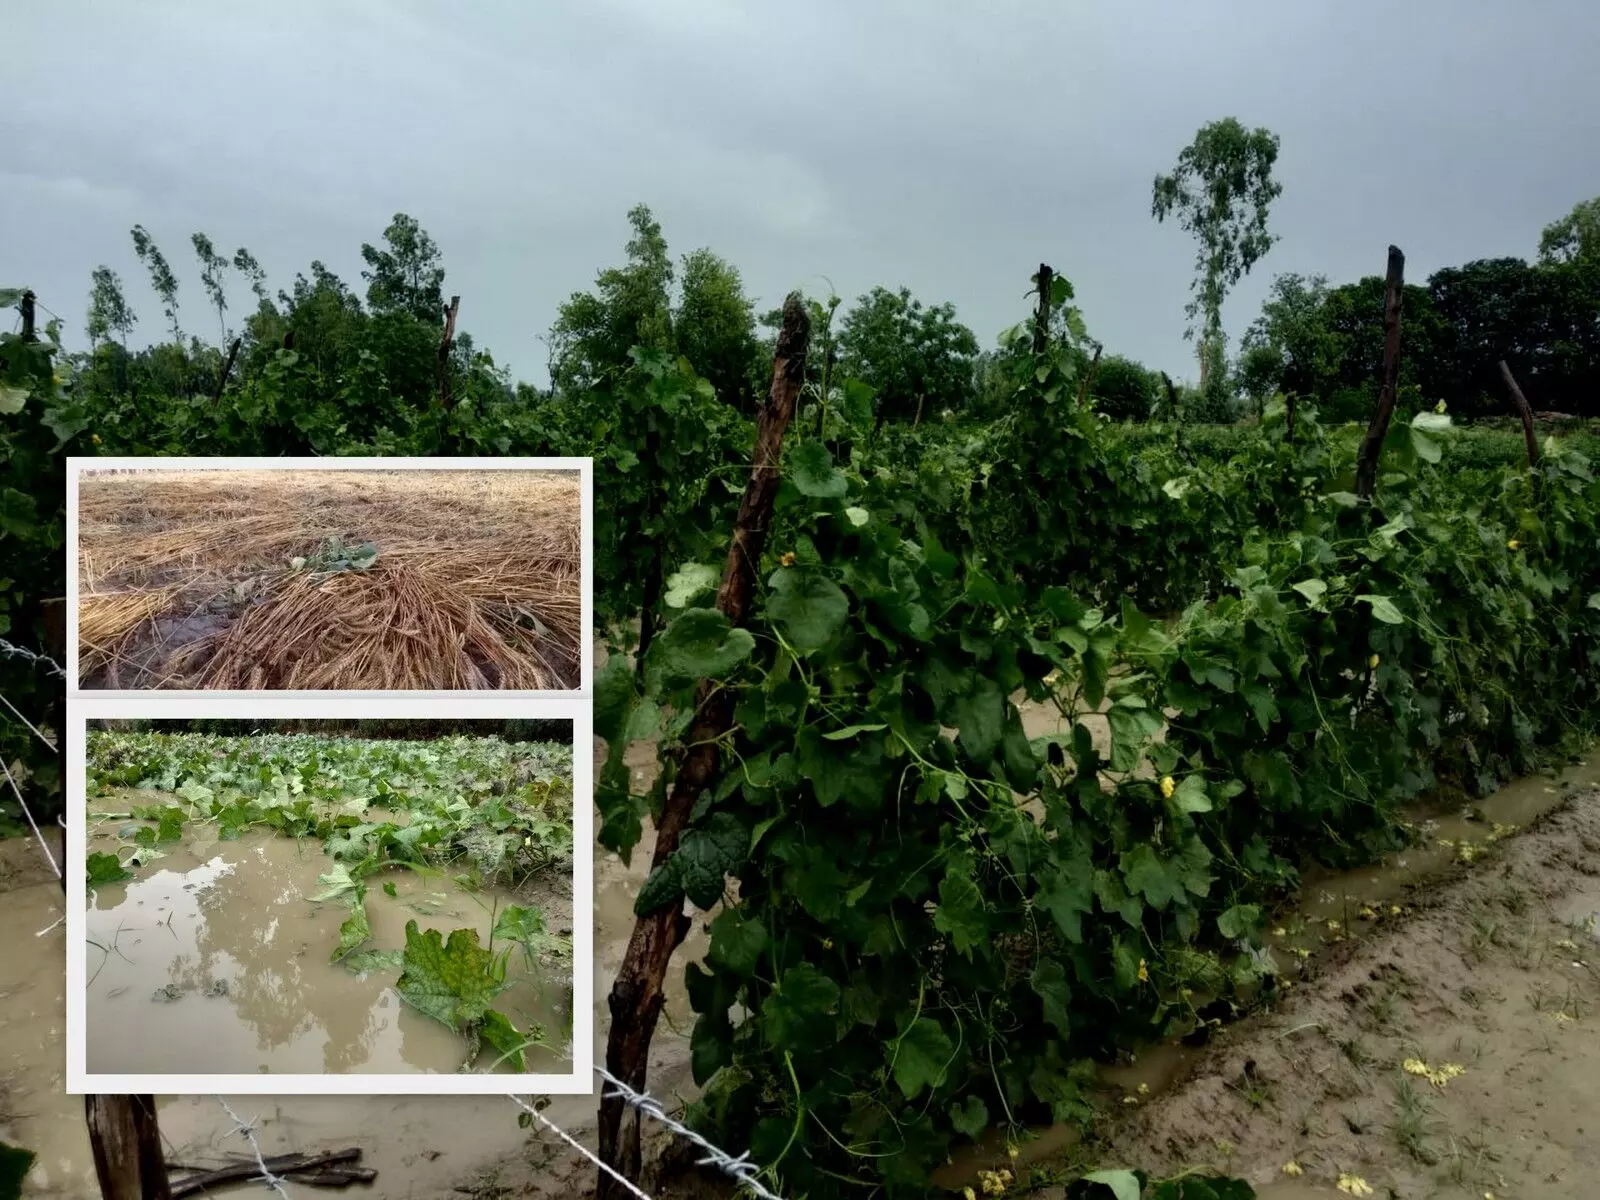 उत्तर प्रदेश, बिहार सहित कई राज्यों में तेज हवाओं के साथ बारिश, ओले गिरने से किसानों को भारी नुकसान